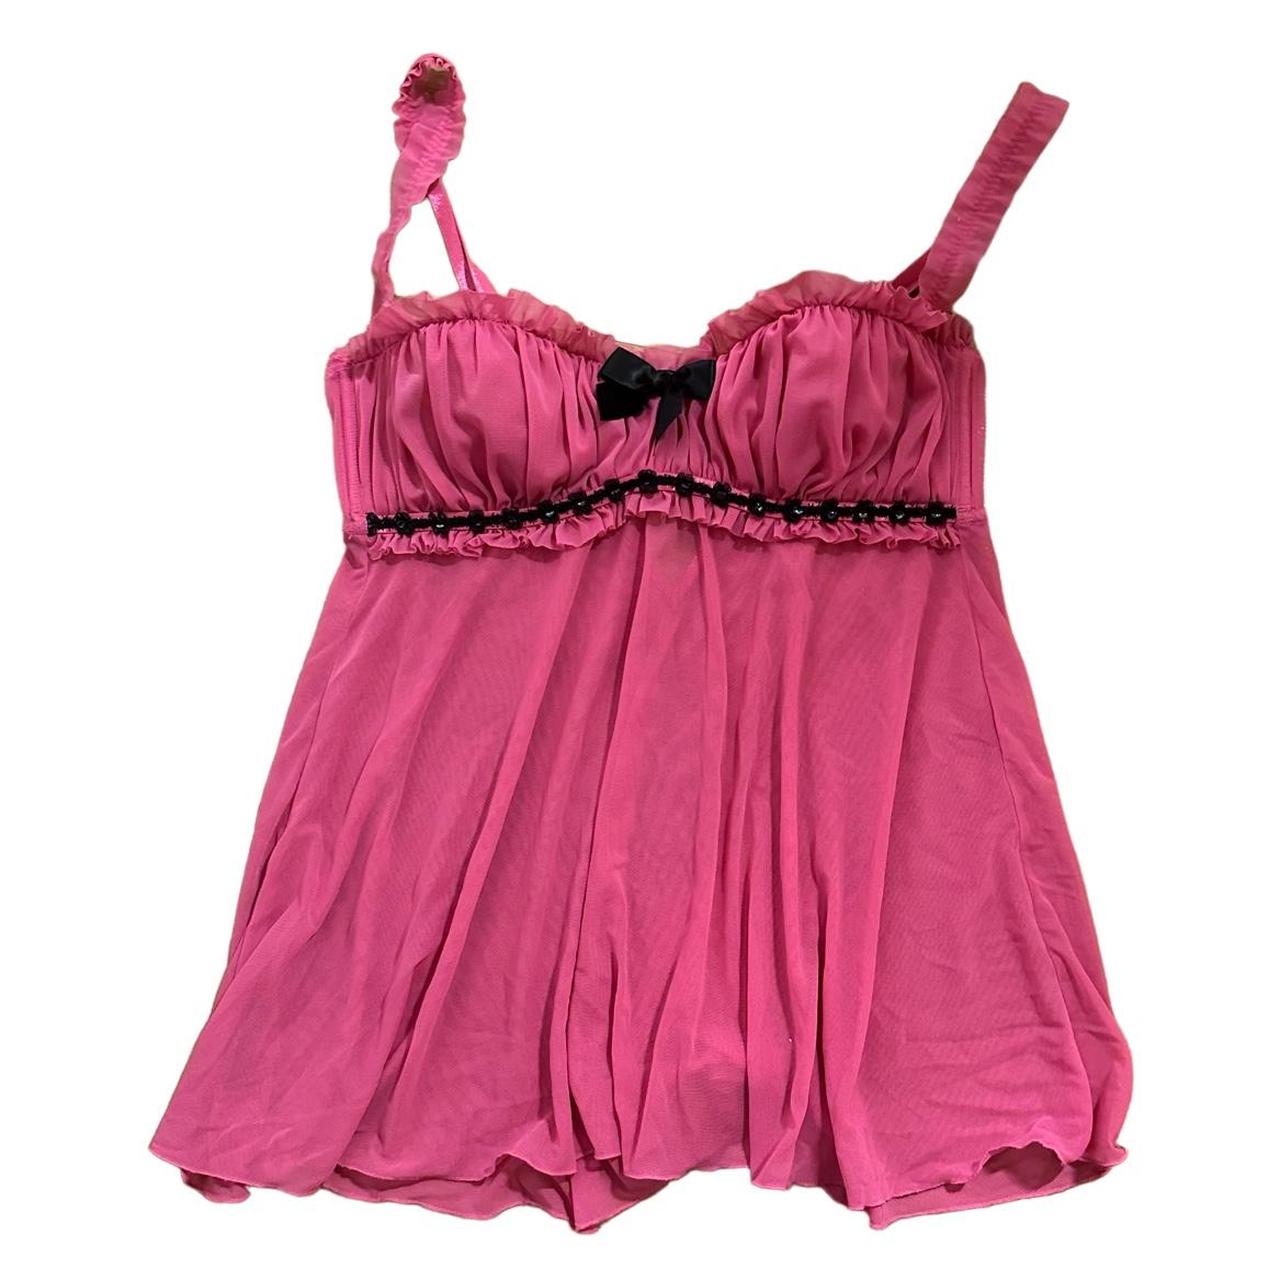 Black and pink mesh babydoll lingerie top Size:... - Depop